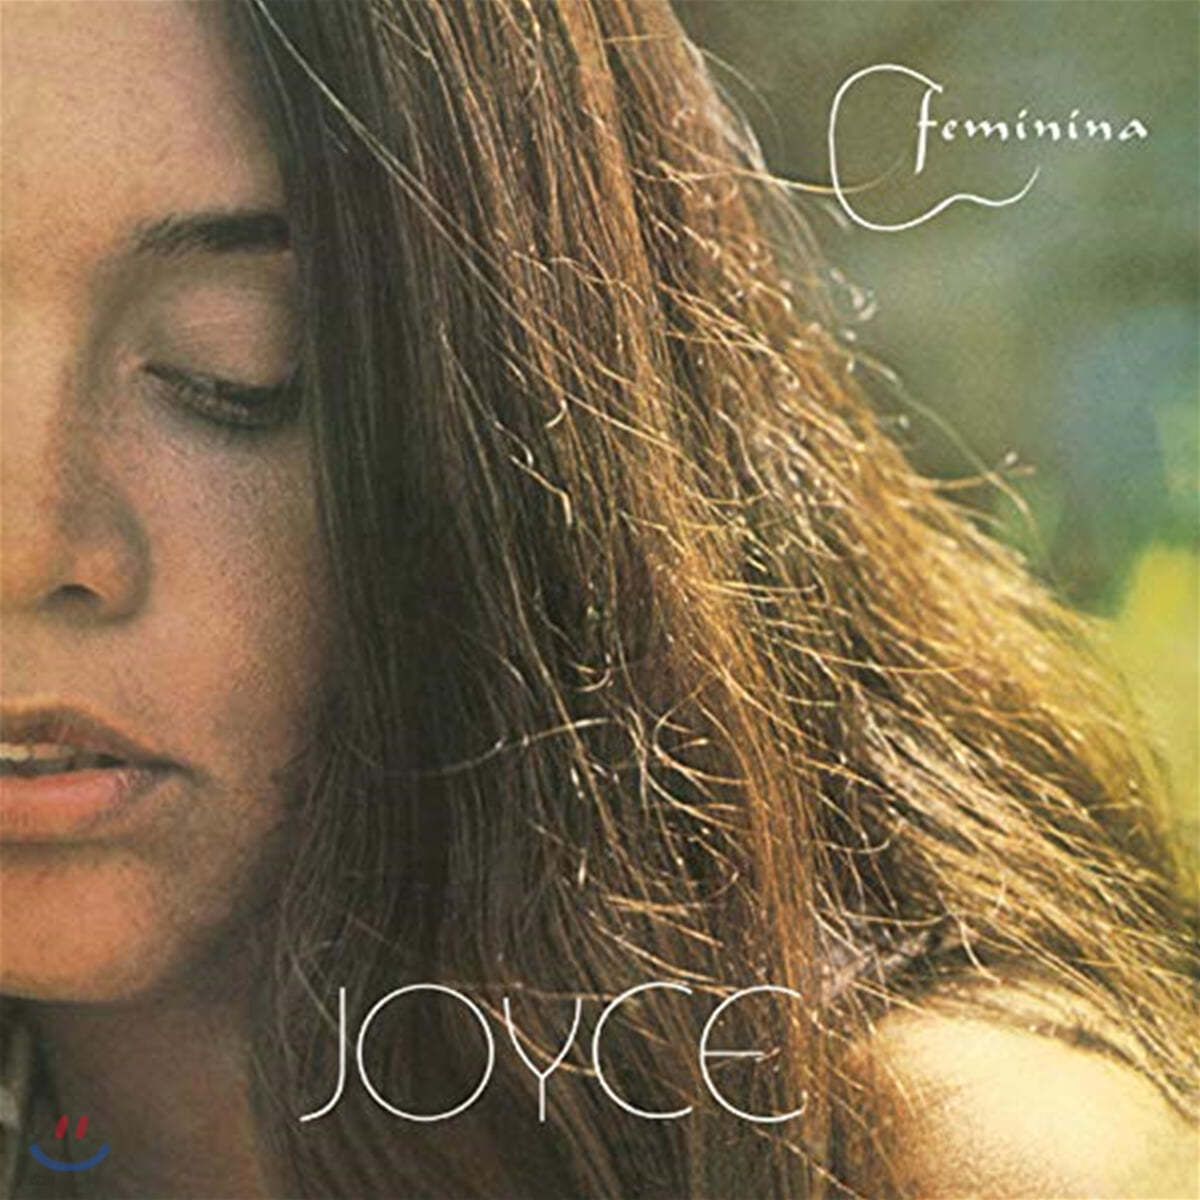 Joyce (조이스) - Feminina [LP]